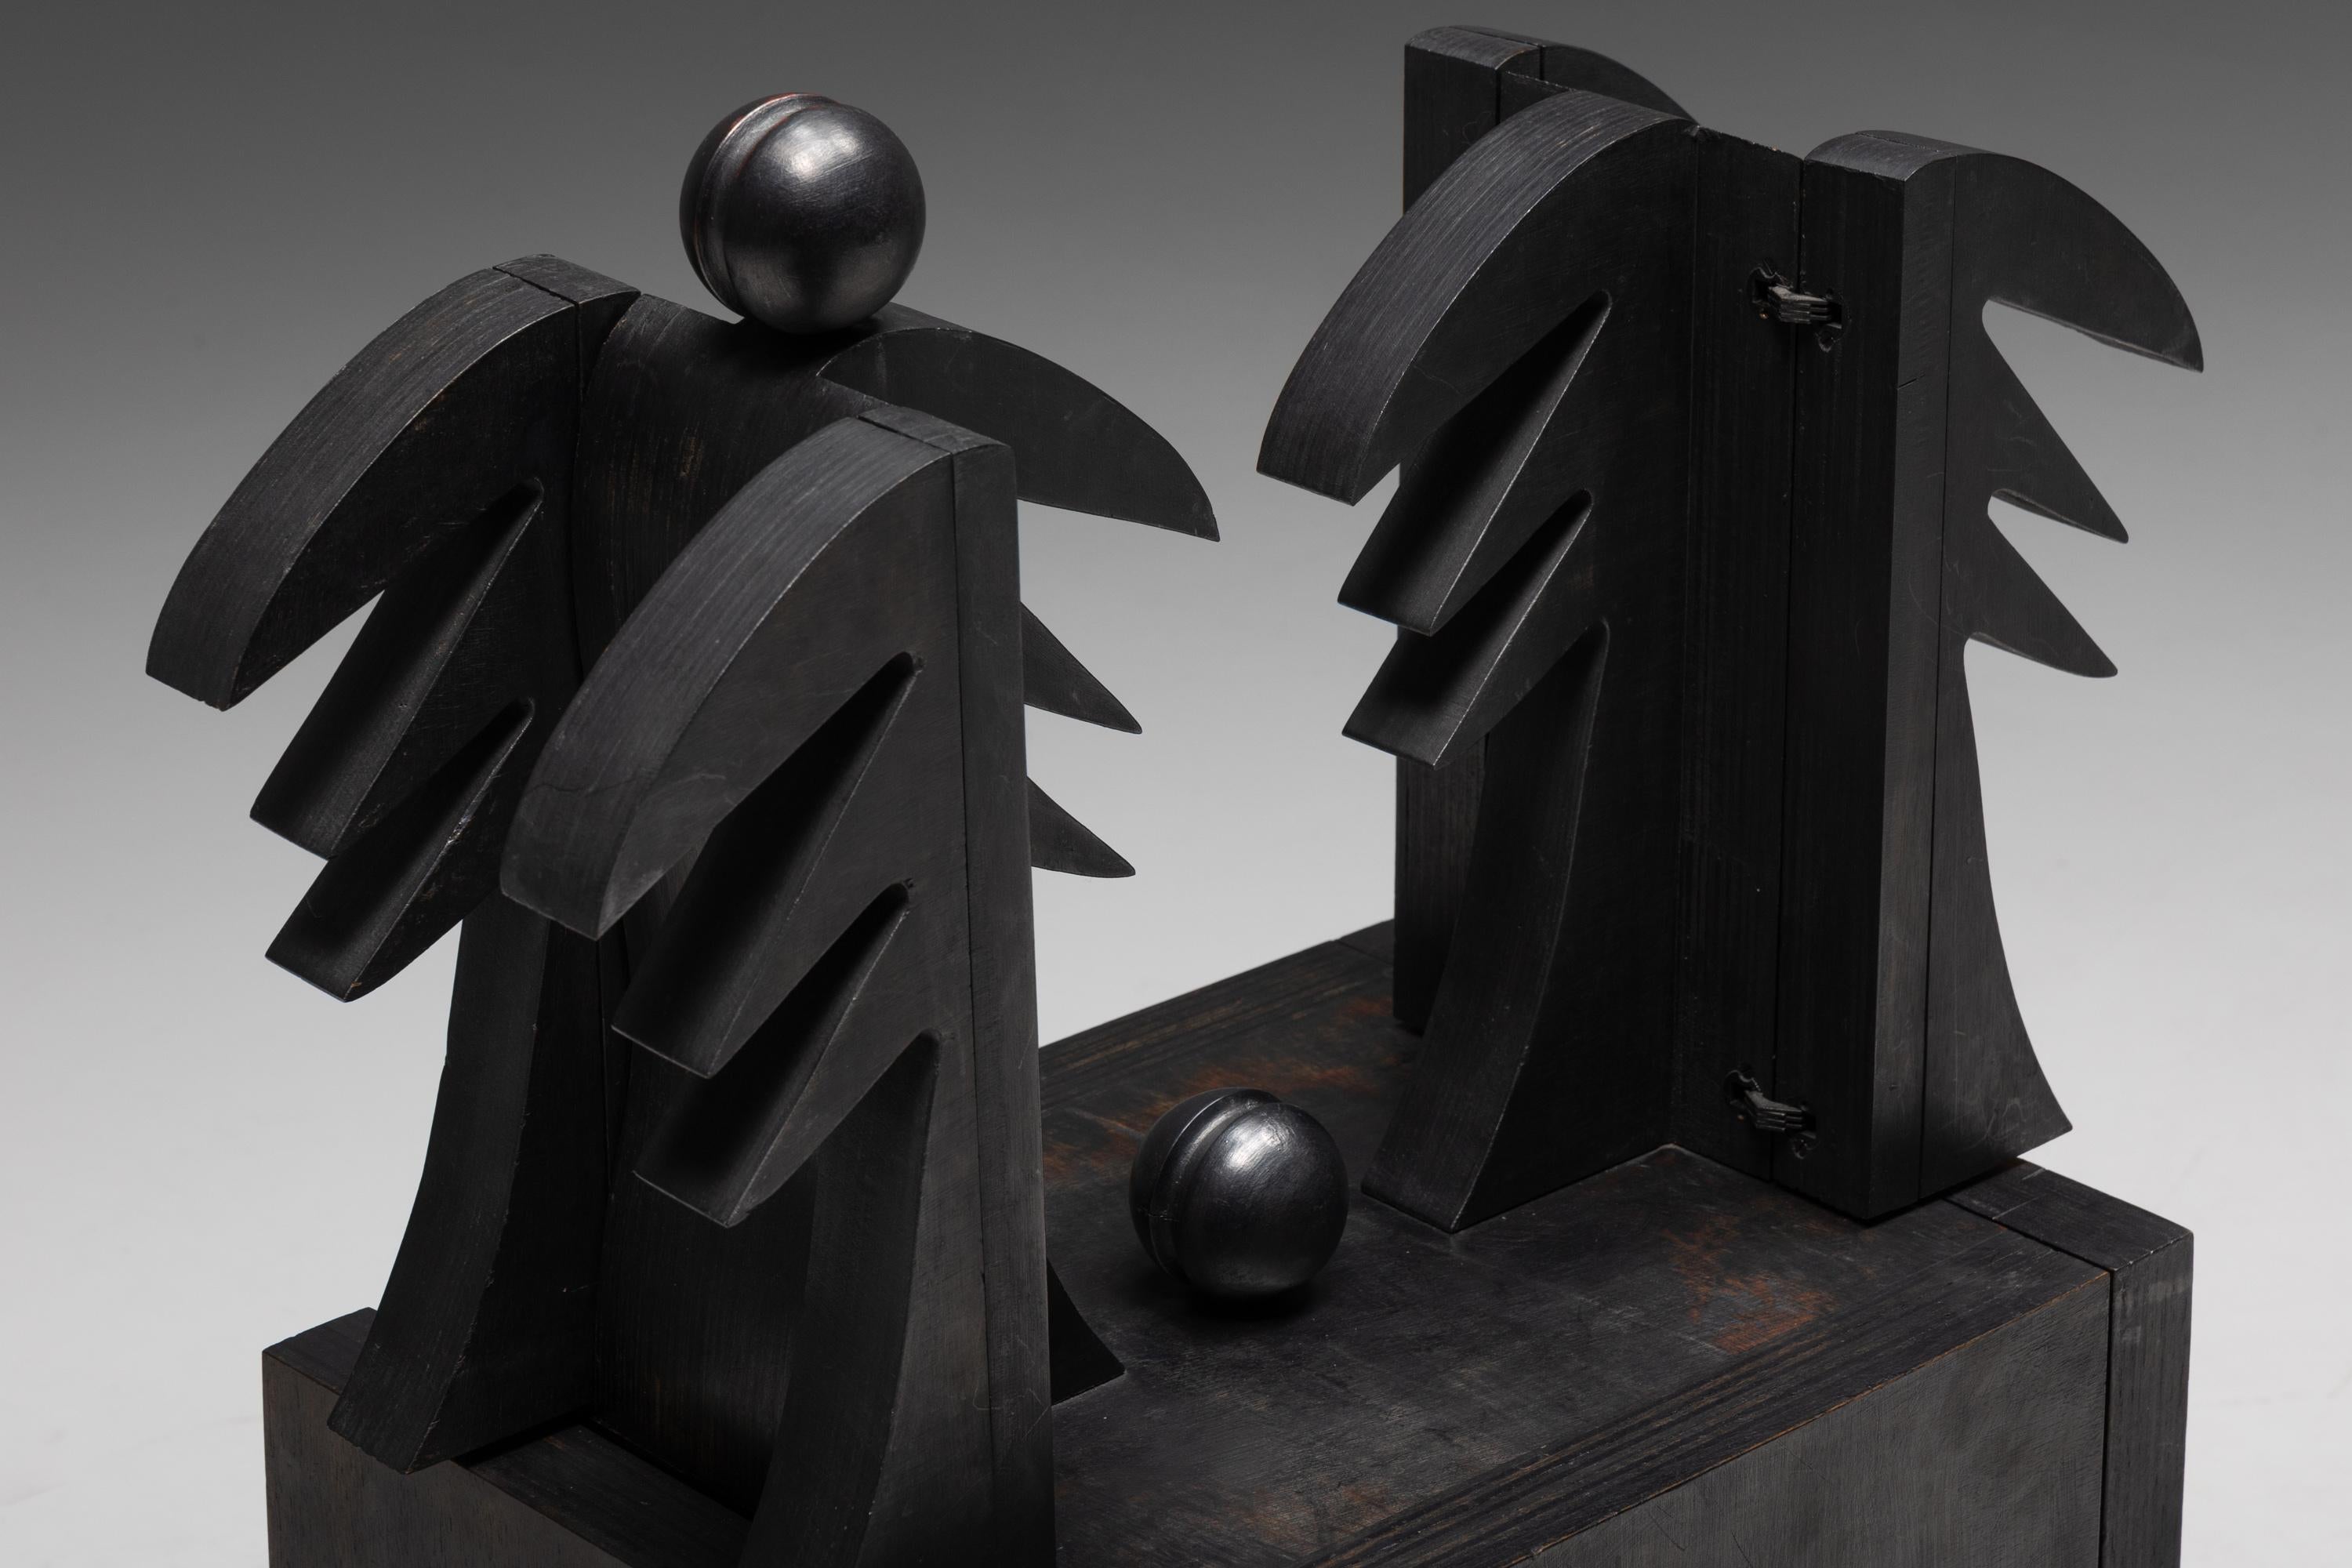 Wood CoBrA Art Sculpture 'Oizal' by Serge Vandercam, 1974